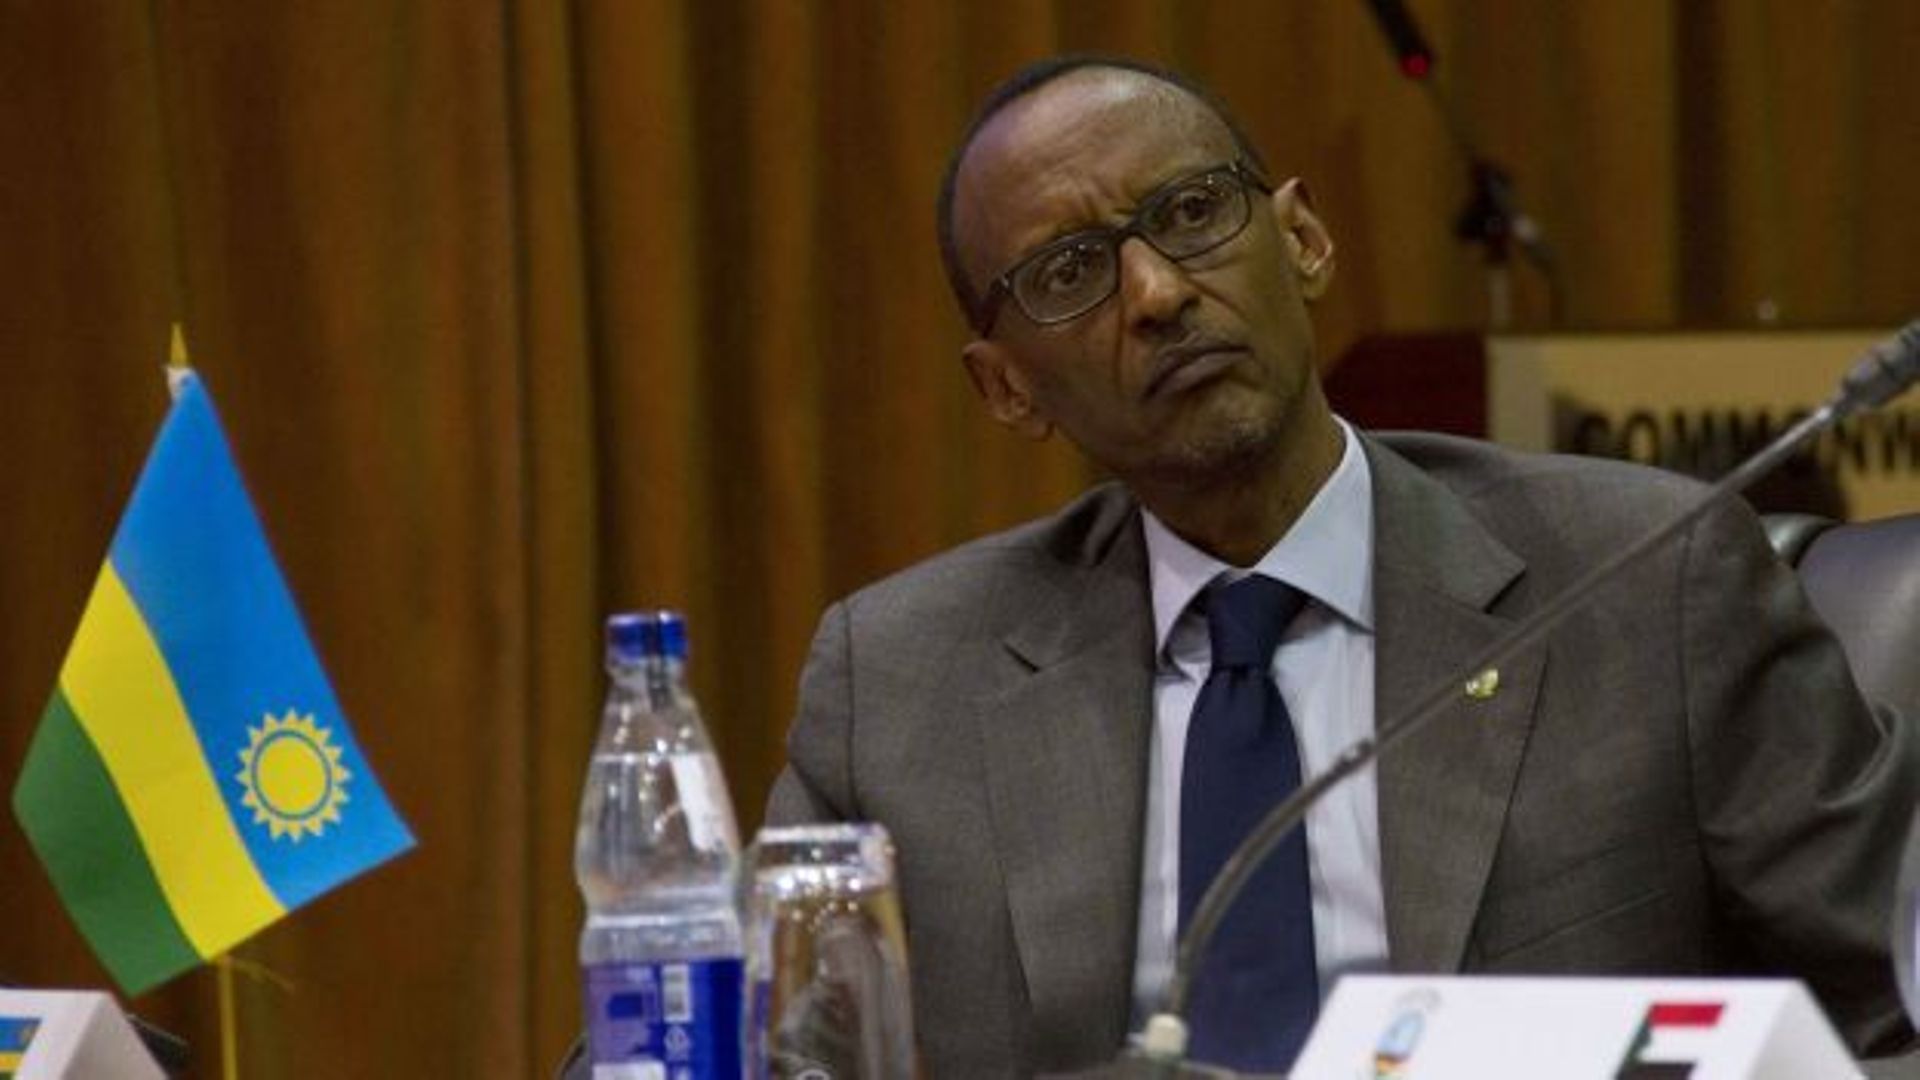 Accusations du président rwandais: "Ce type d'accusations est étonnant"